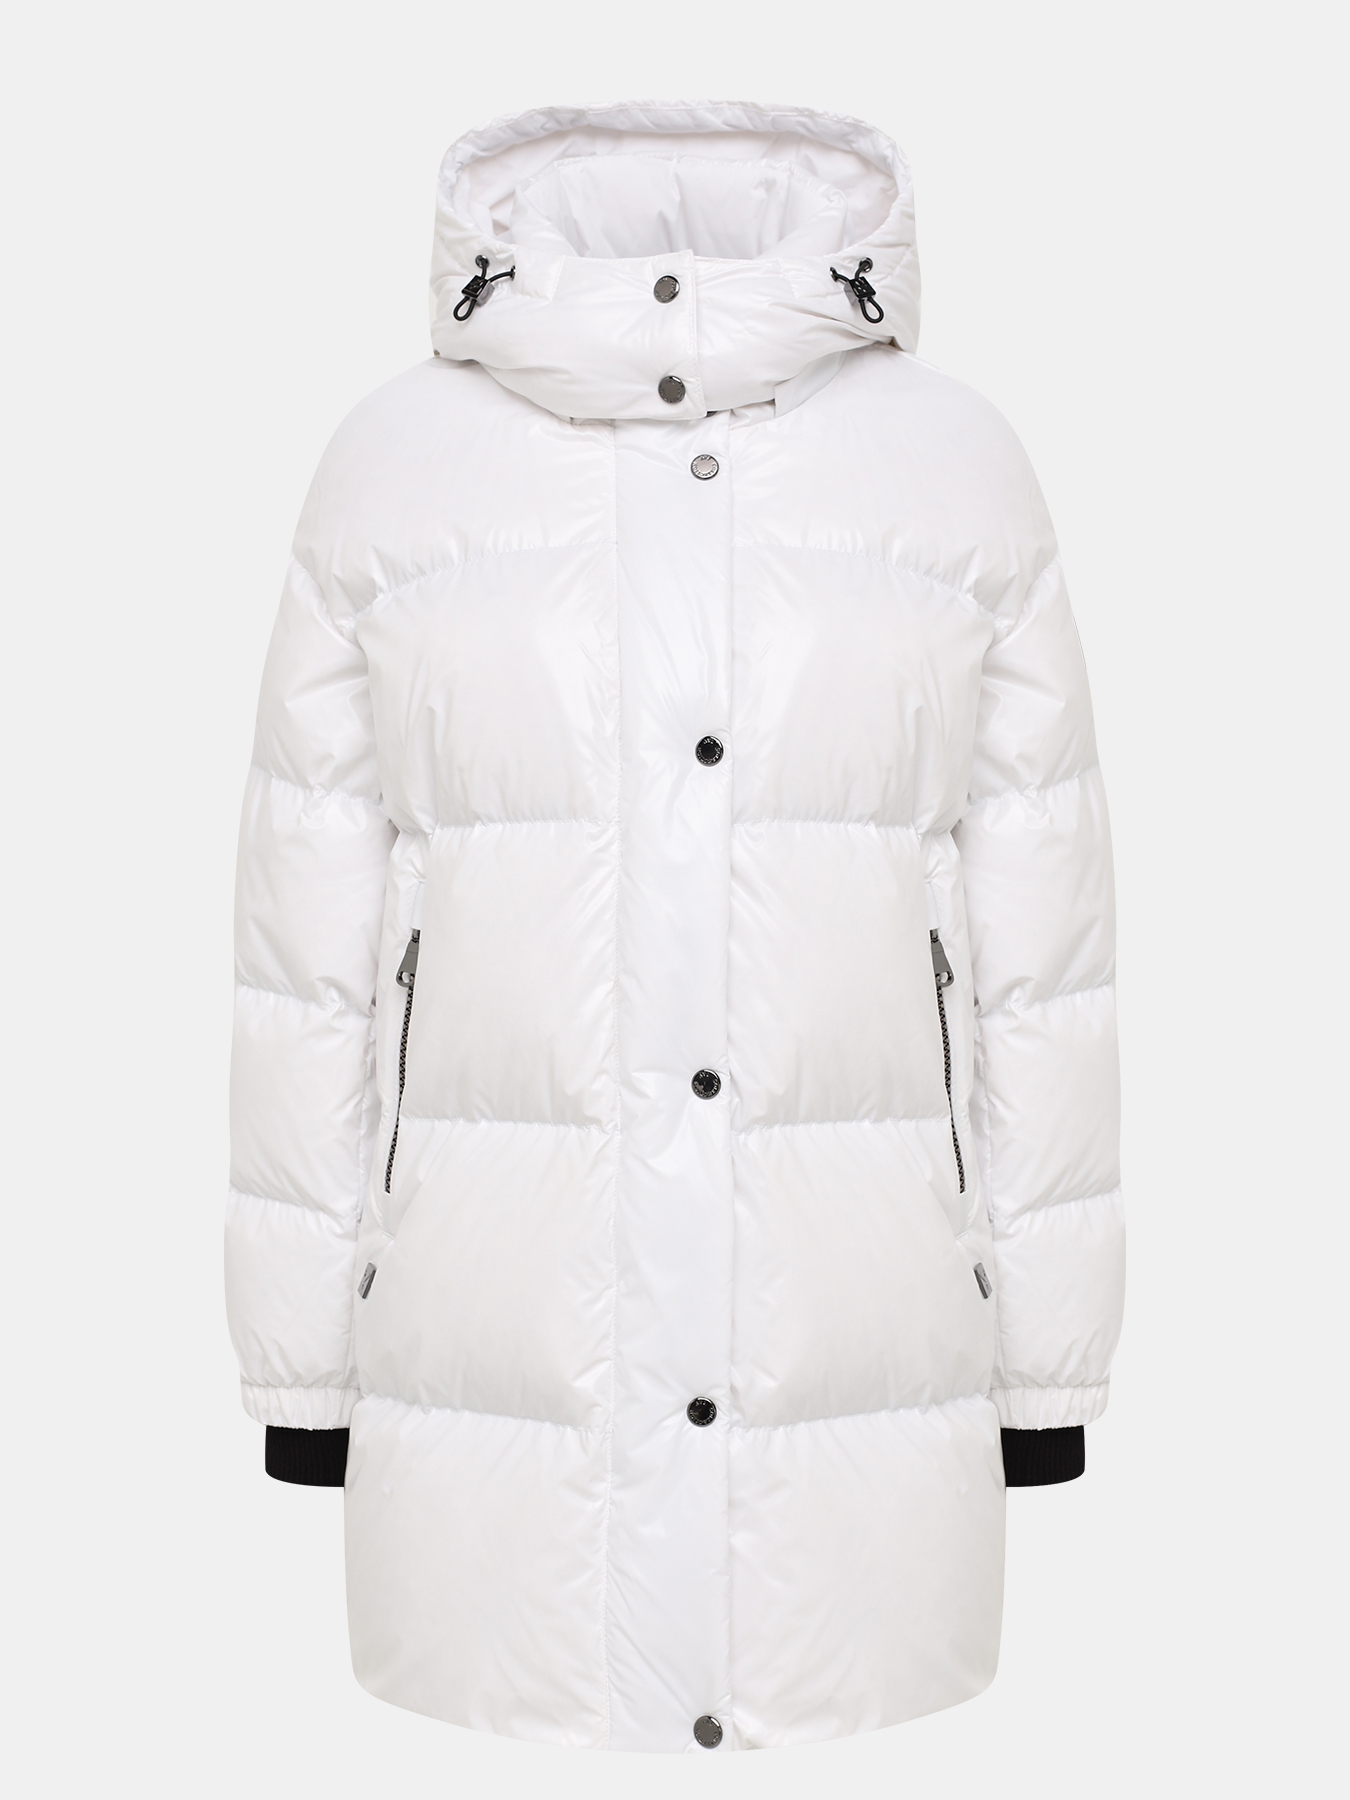 Куртка AVI 433516-020, цвет белый, размер 44